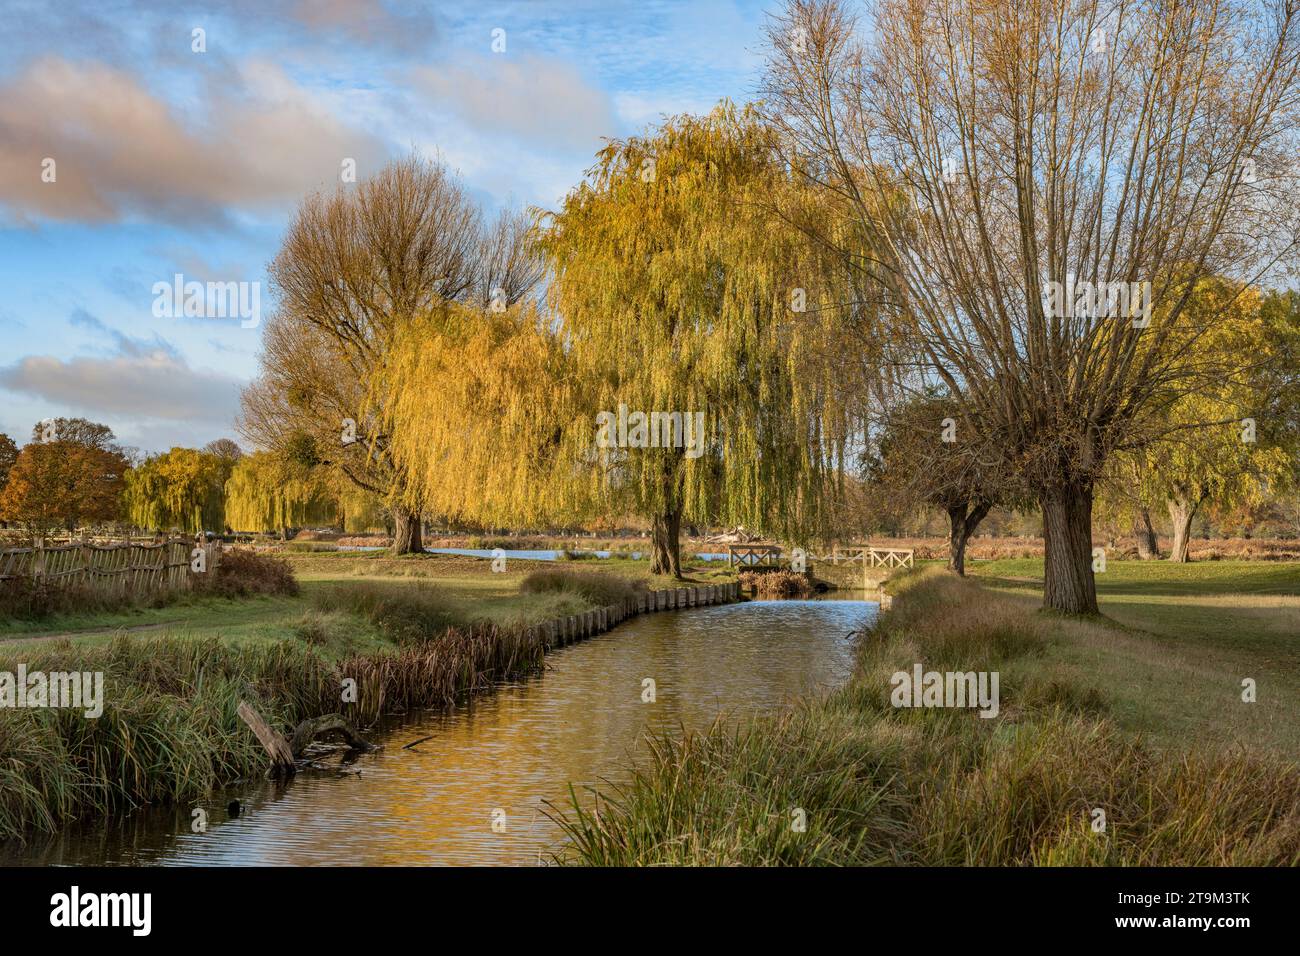 Ciel ensoleillé bleu tacheté d'automne à Bushy Park Surrey Angleterre Royaume-Uni fin novembre Banque D'Images